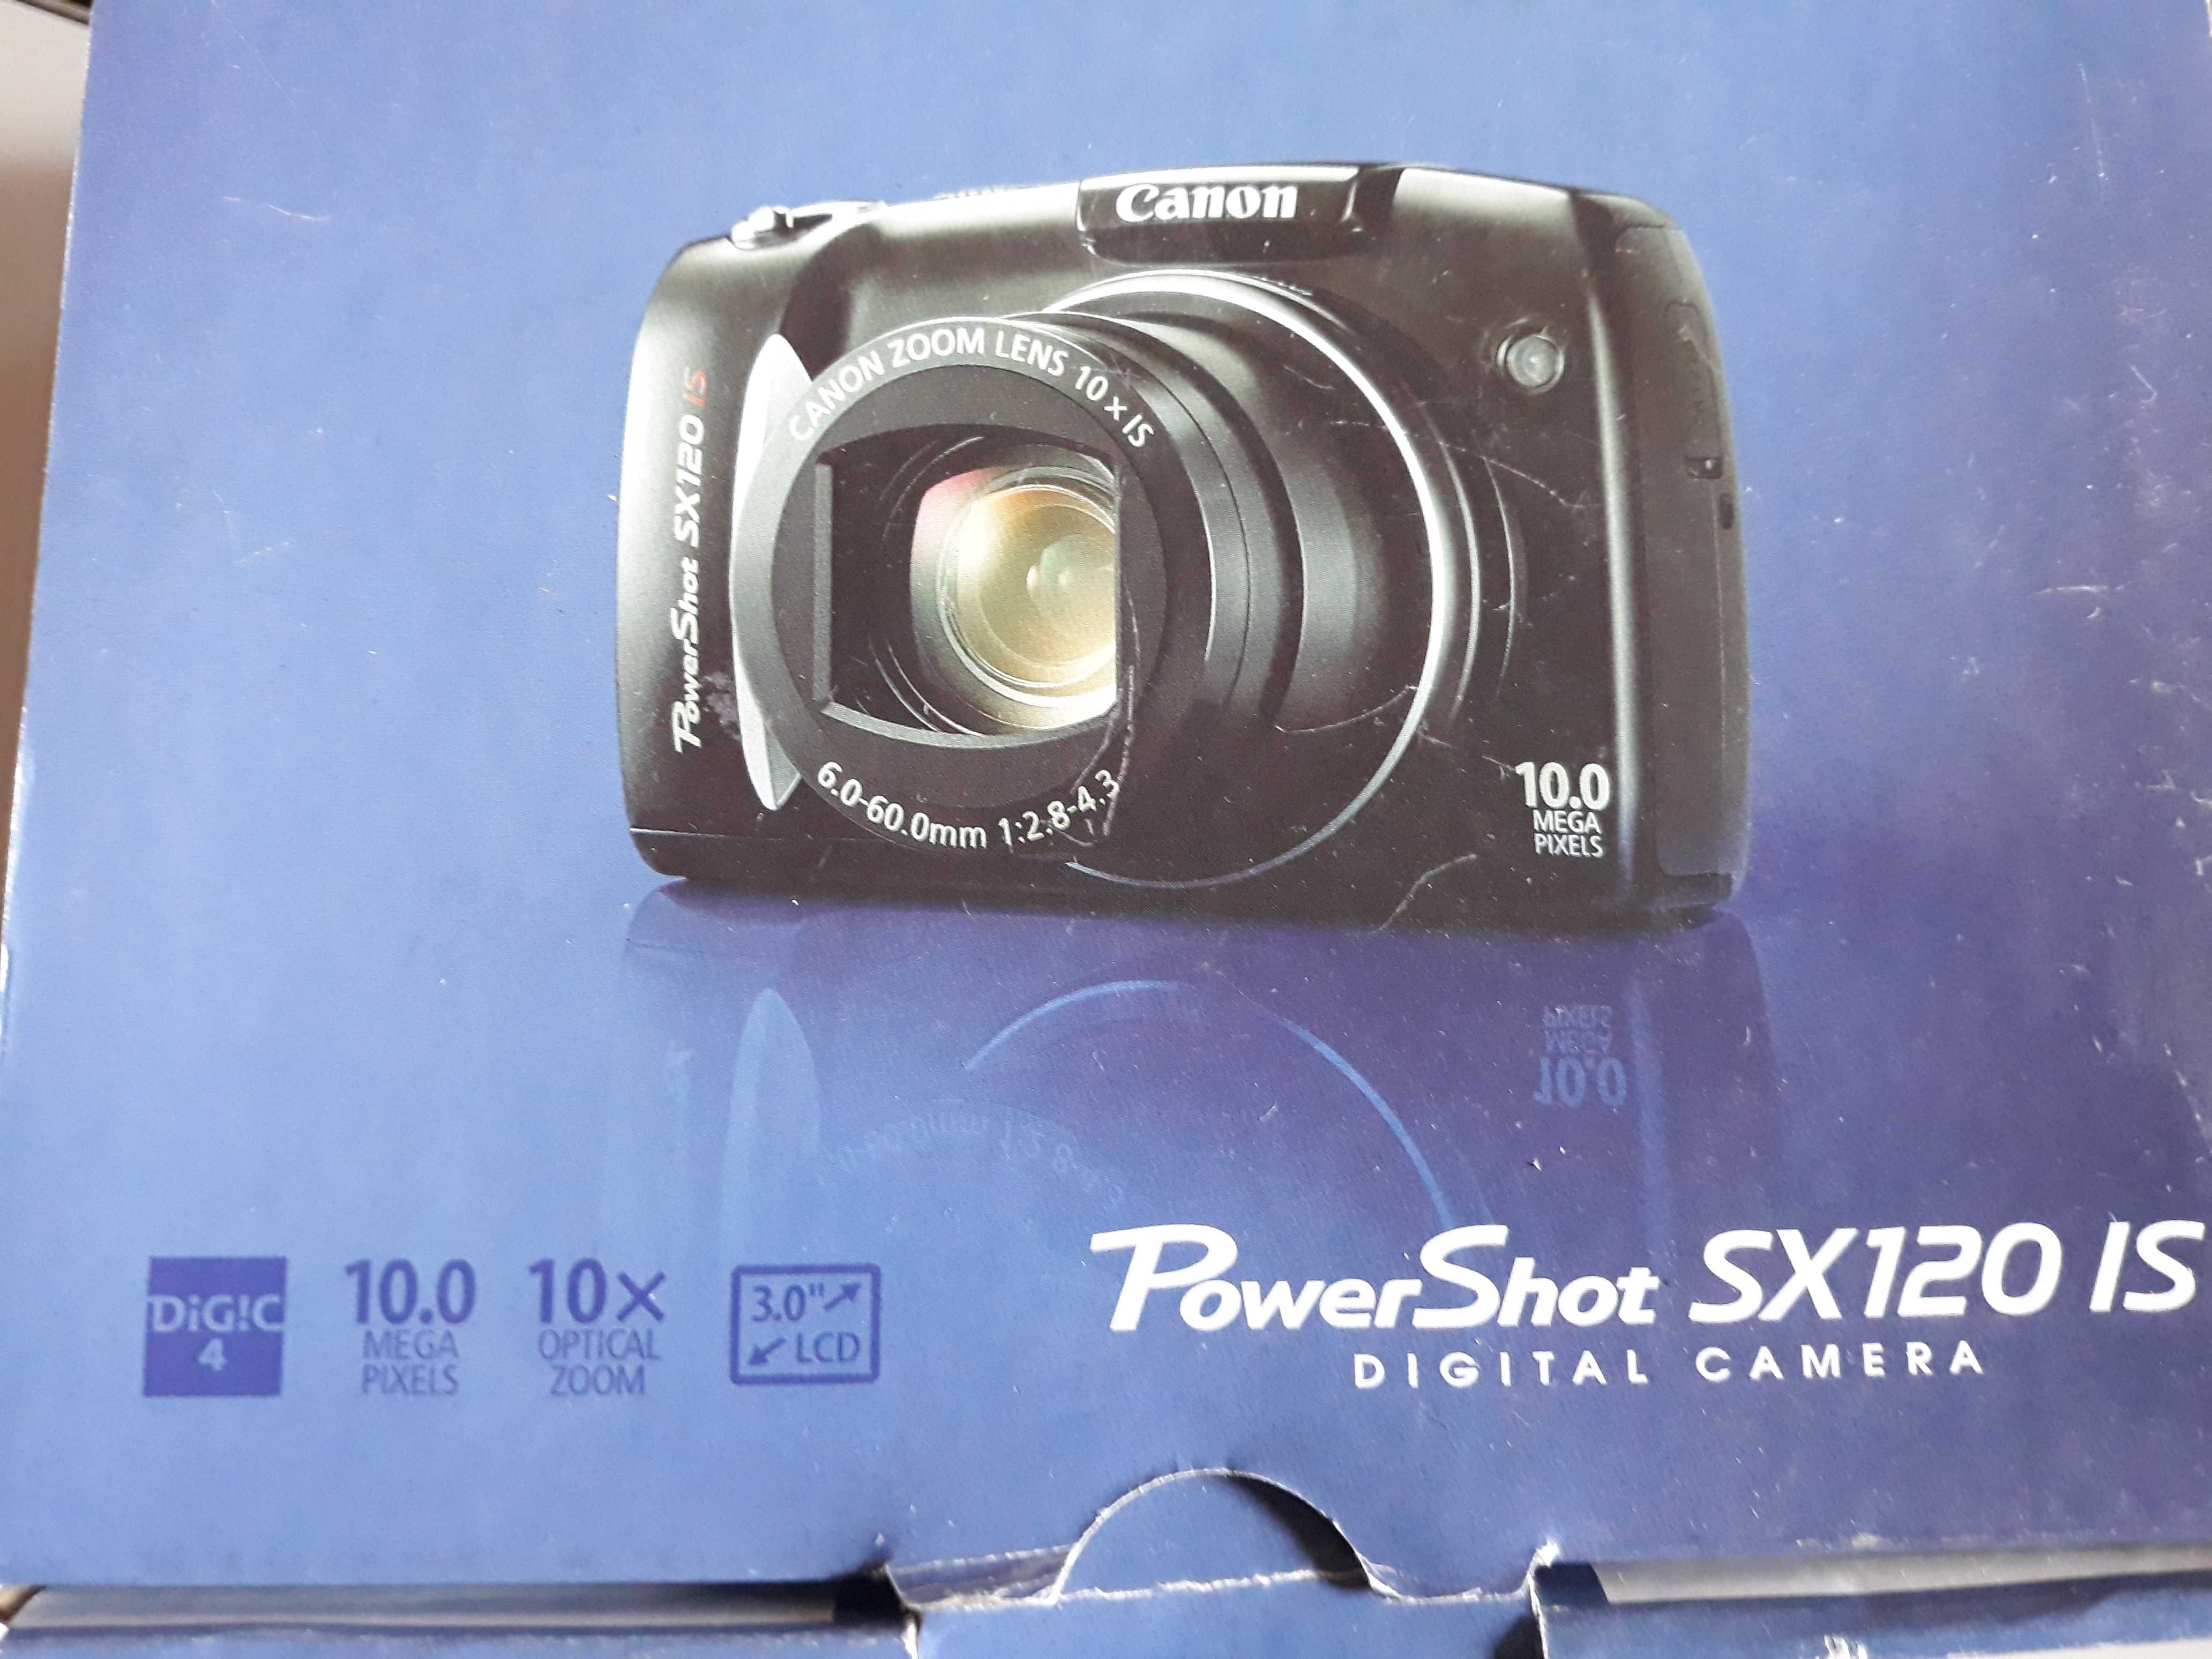 Poxer Shot SX120 IS CANON para reparar.